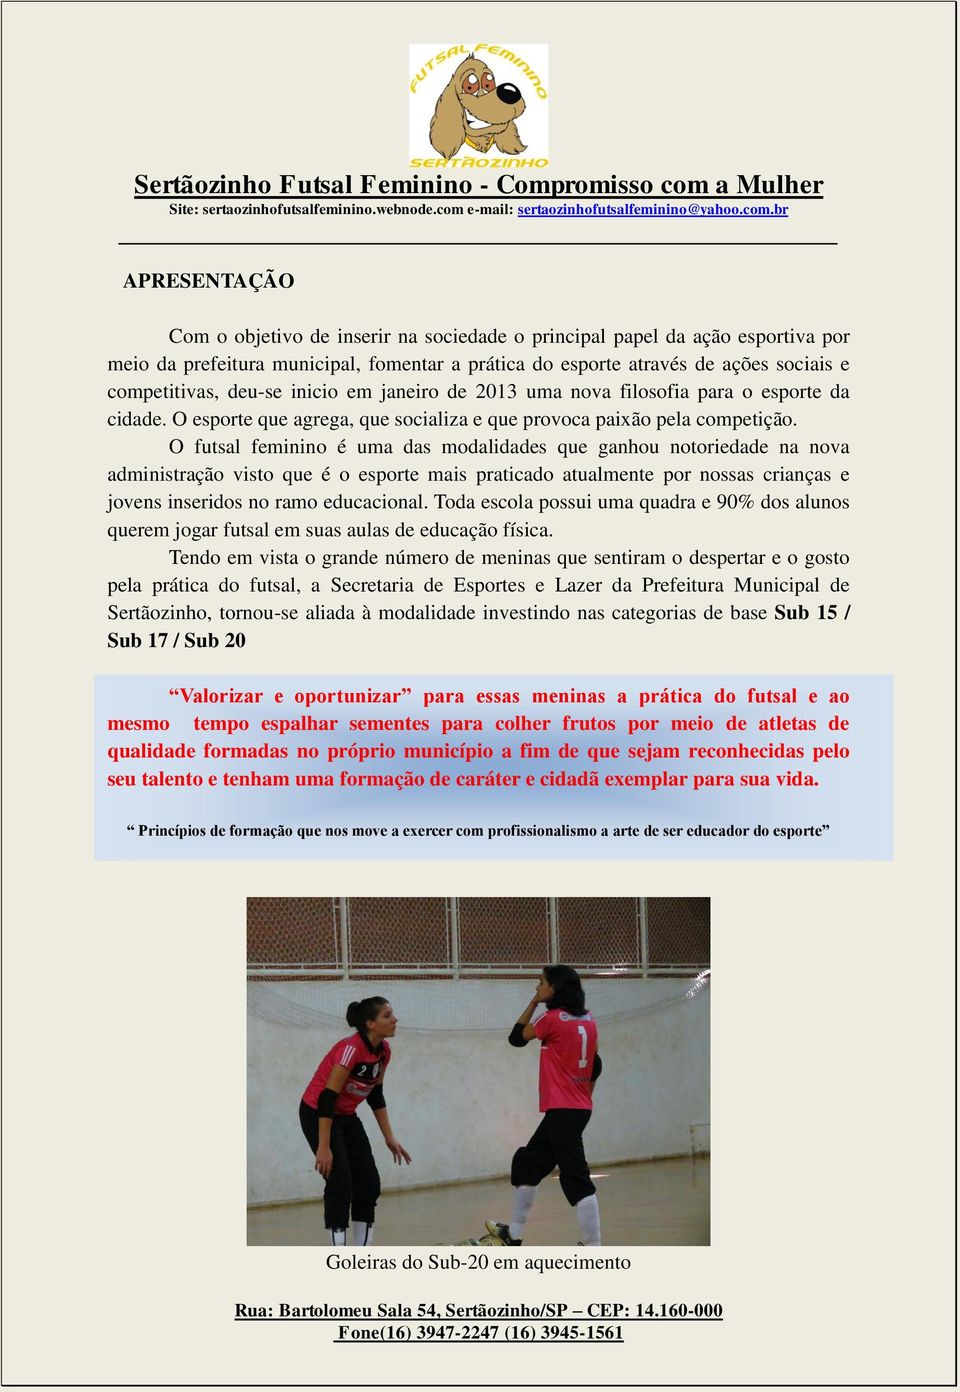 O futsal feminino é uma das modalidades que ganhou notoriedade na nova administração visto que é o esporte mais praticado atualmente por nossas crianças e jovens inseridos no ramo educacional.